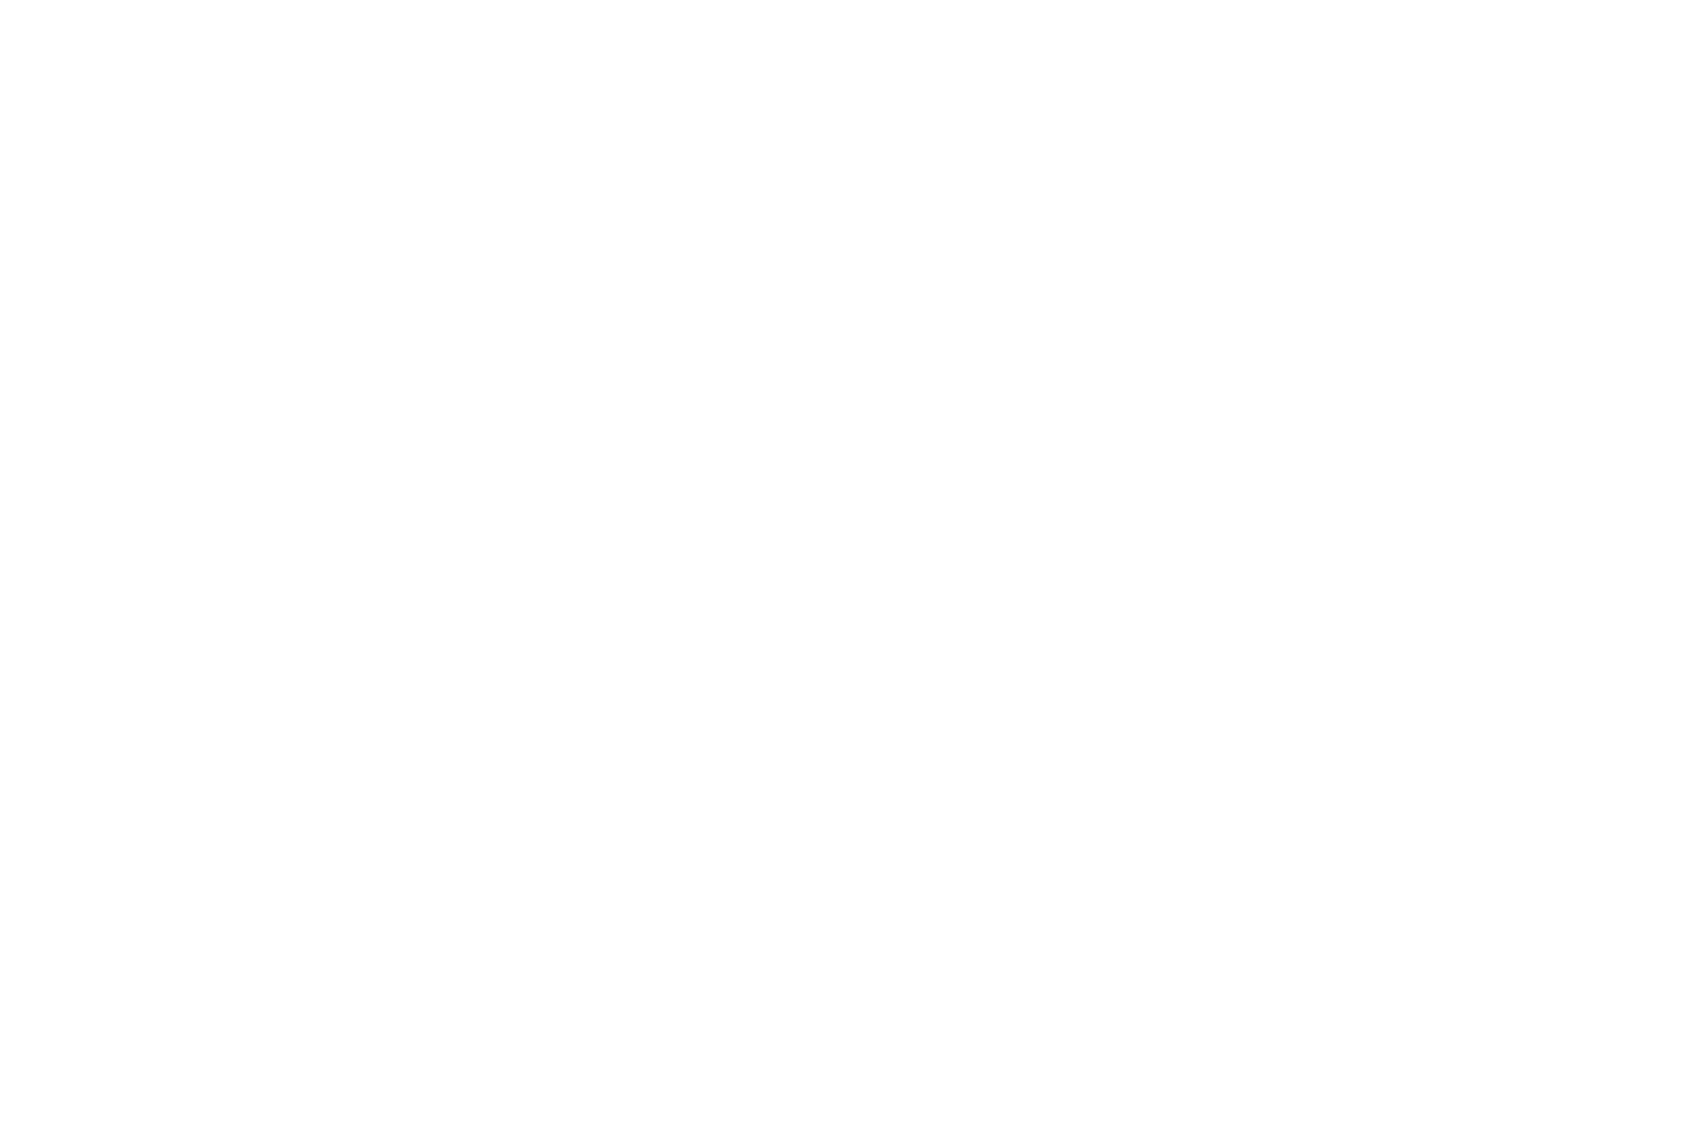 Ximera